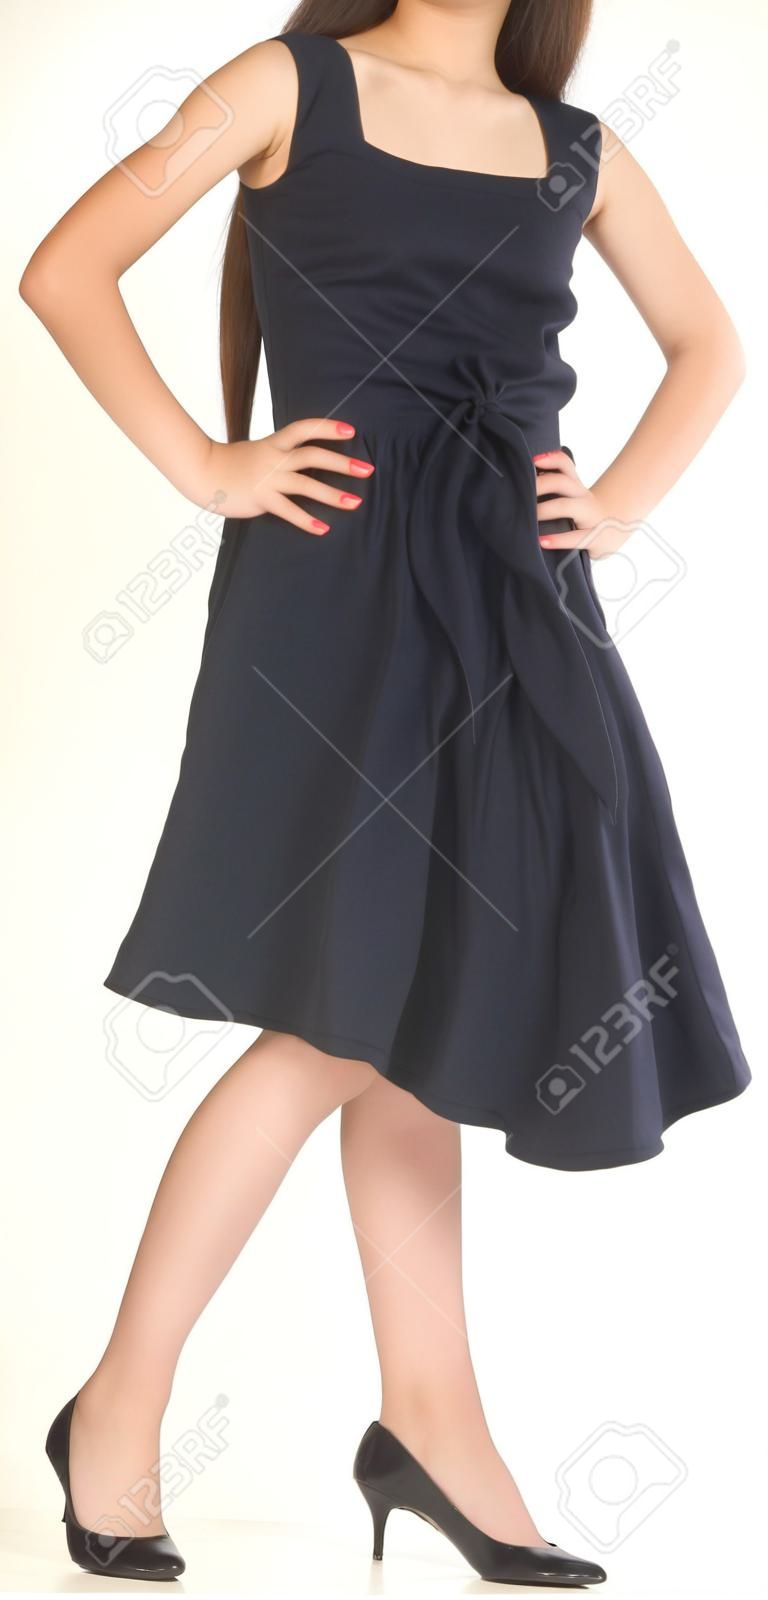 Adolescente de la muchacha asiática posando en un vestido negro y zapatos de tacón